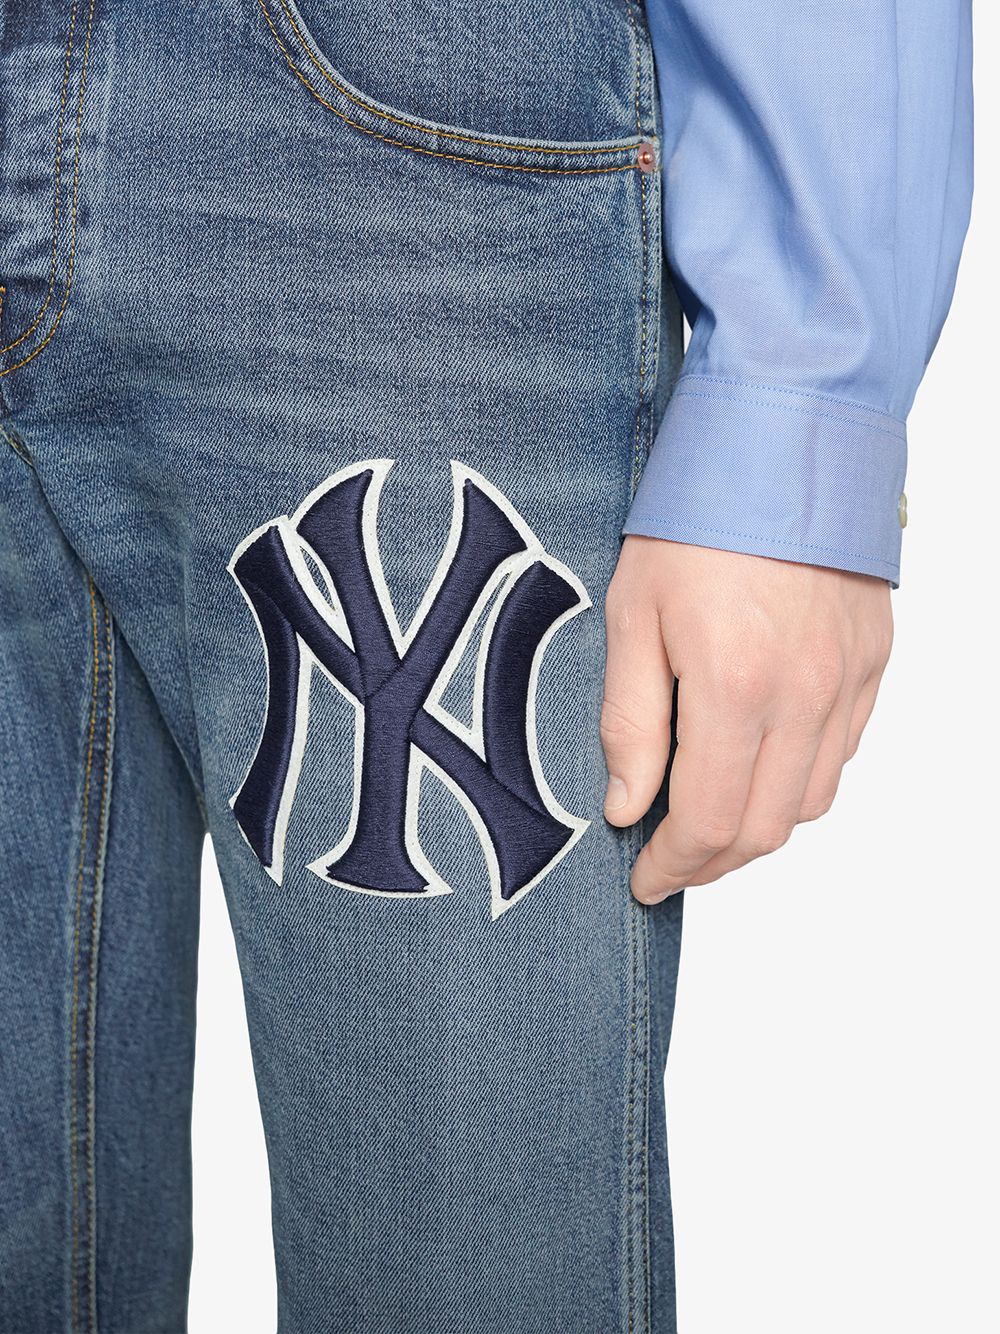 фото Gucci зауженные джинсы с нашивкой